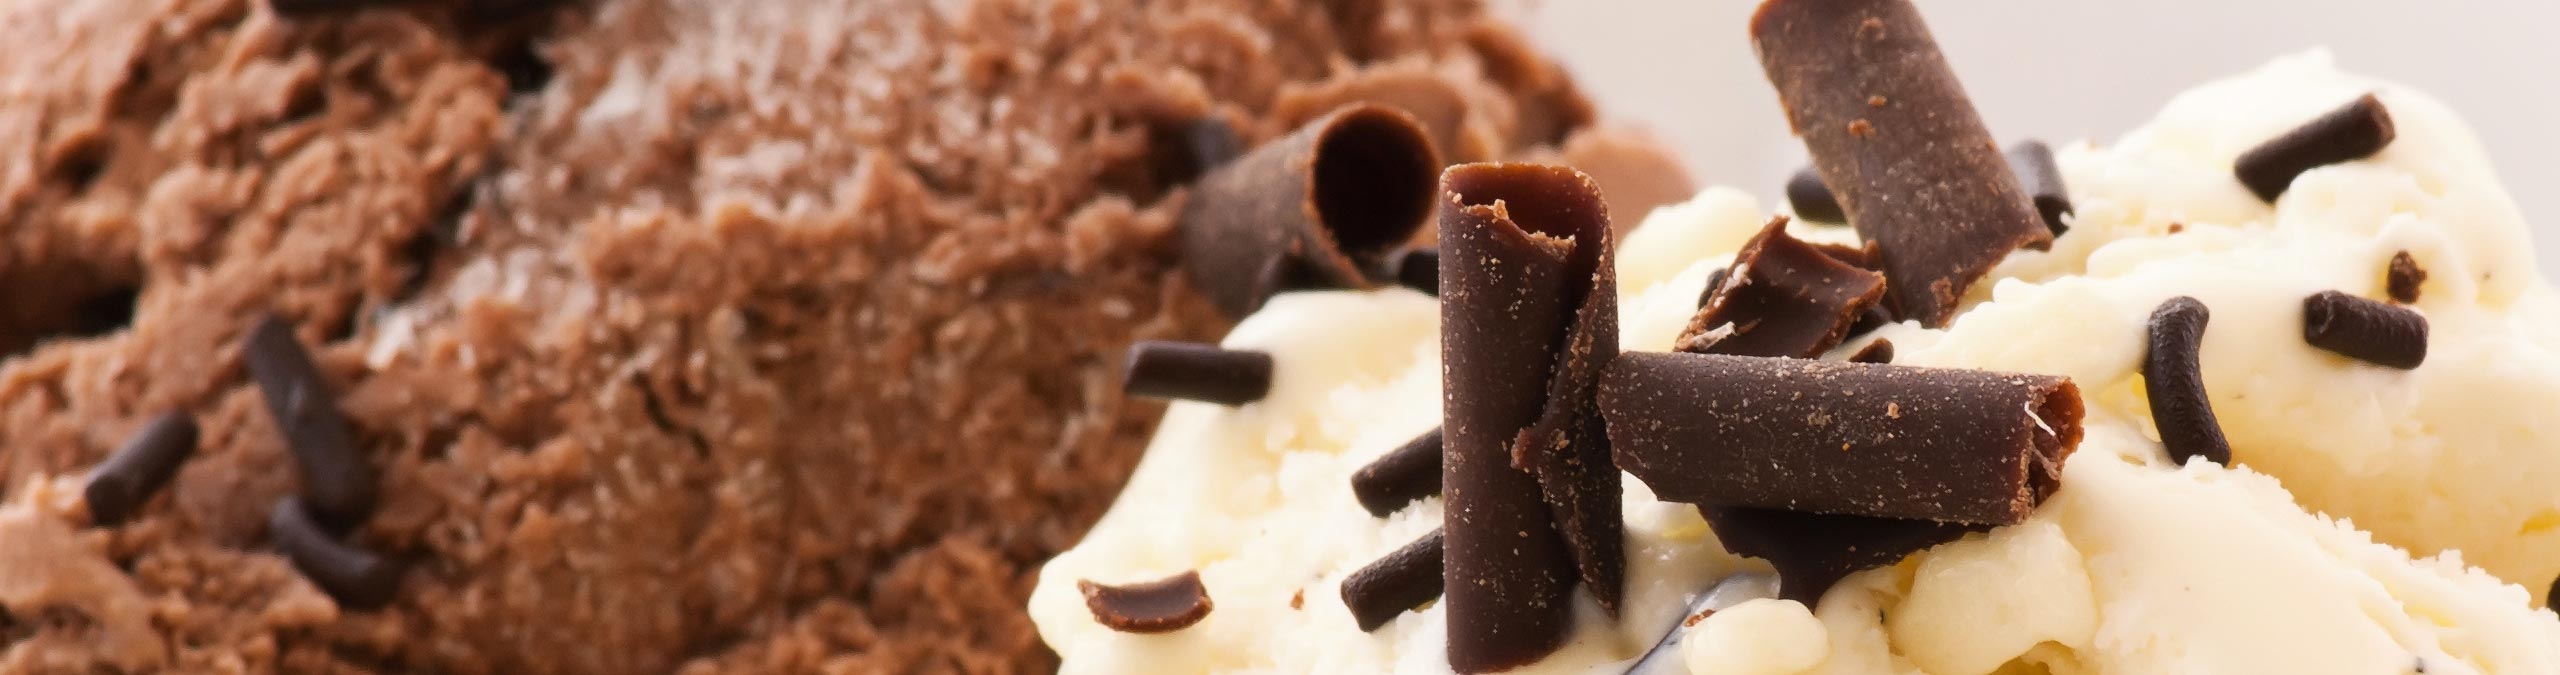 Dessert e Dolci Congelati GiorgioMare - Gelati, dolci e pasticceria surgelata per deliziare il tuo palato: perfetti per qualsiasi occasione!